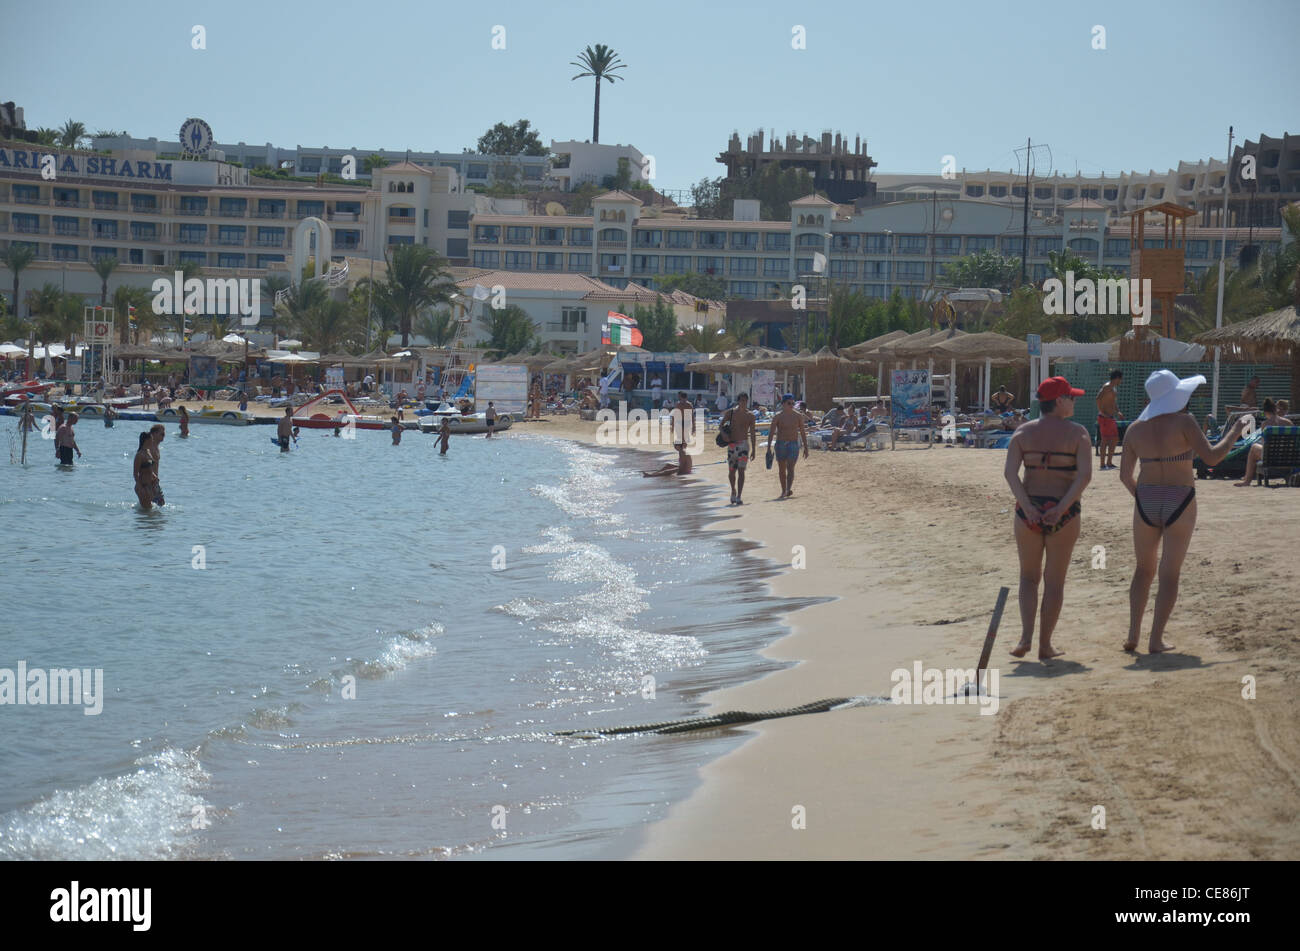 La famosa Naama Bay Beach nel cuore dell'Egitto il premier Red Sea Resort a Sherm El Sheikh, alla punta sud del Sinai. Foto Stock